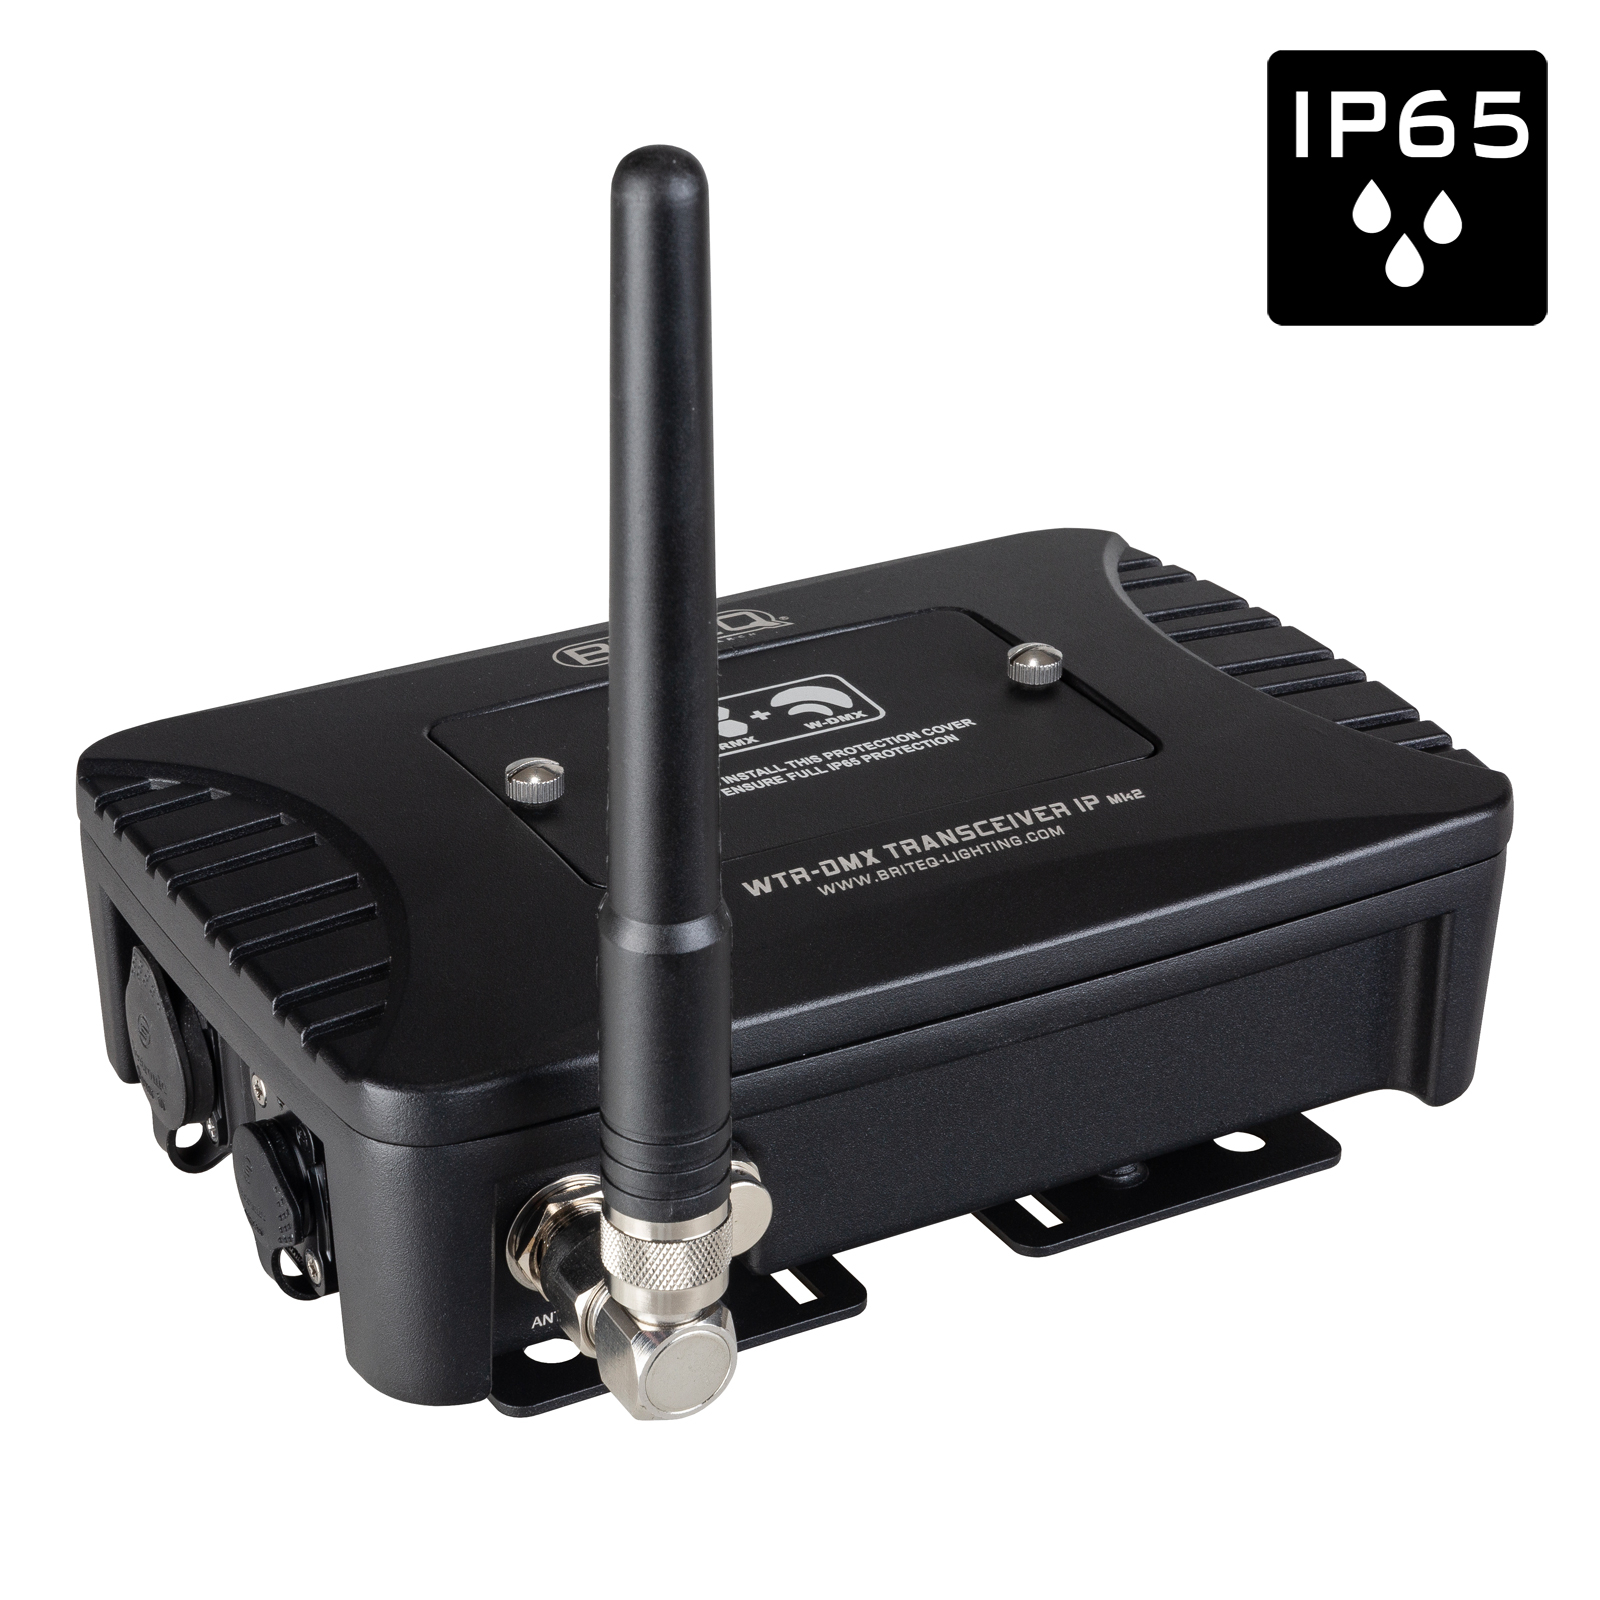 IP65 draadloze DMX-transceiver (zender + ontvanger) voor buitentoepassingen, compatibel met zowel LumenRadio- als Wireless Solution-.  Robuuste behuizing voor vaste installatie en podiumtoepassingen.